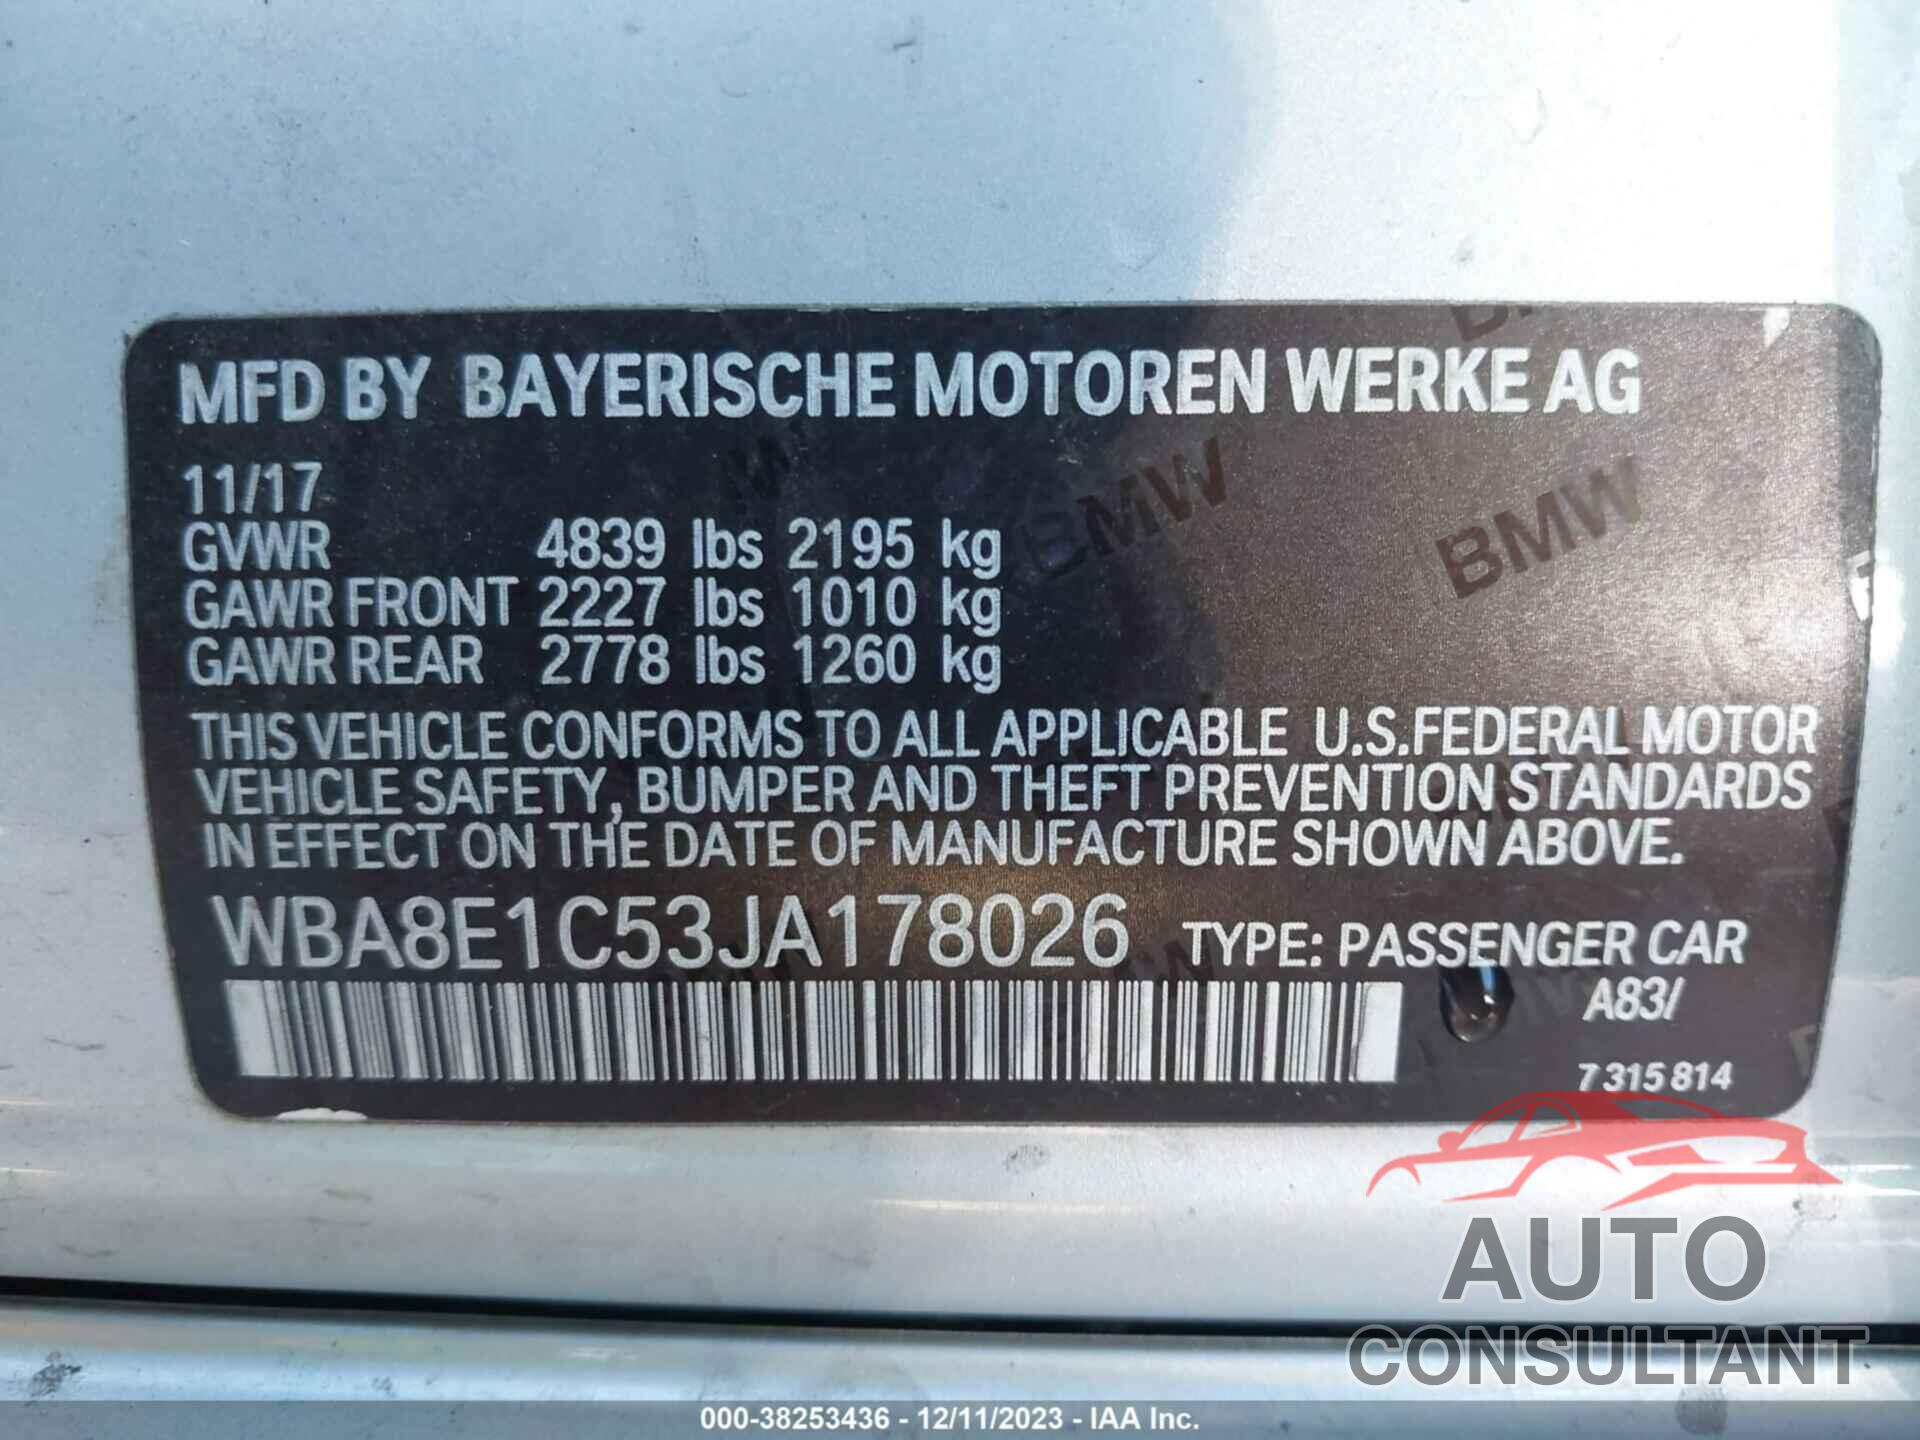 BMW 330E 2018 - WBA8E1C53JA178026